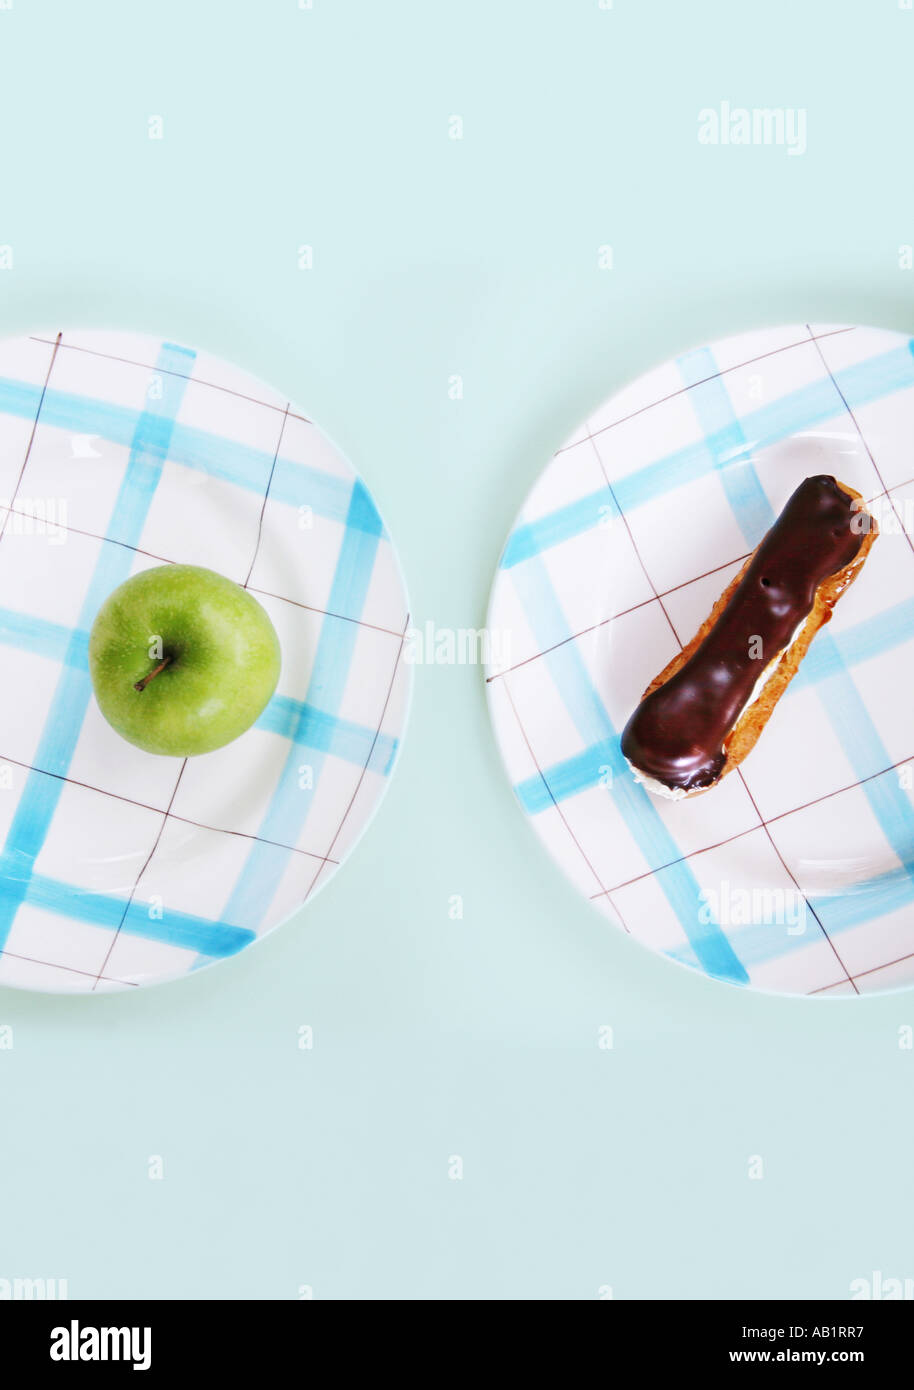 Un eclair de chocolate y una manzana en placas separadas Foto de stock